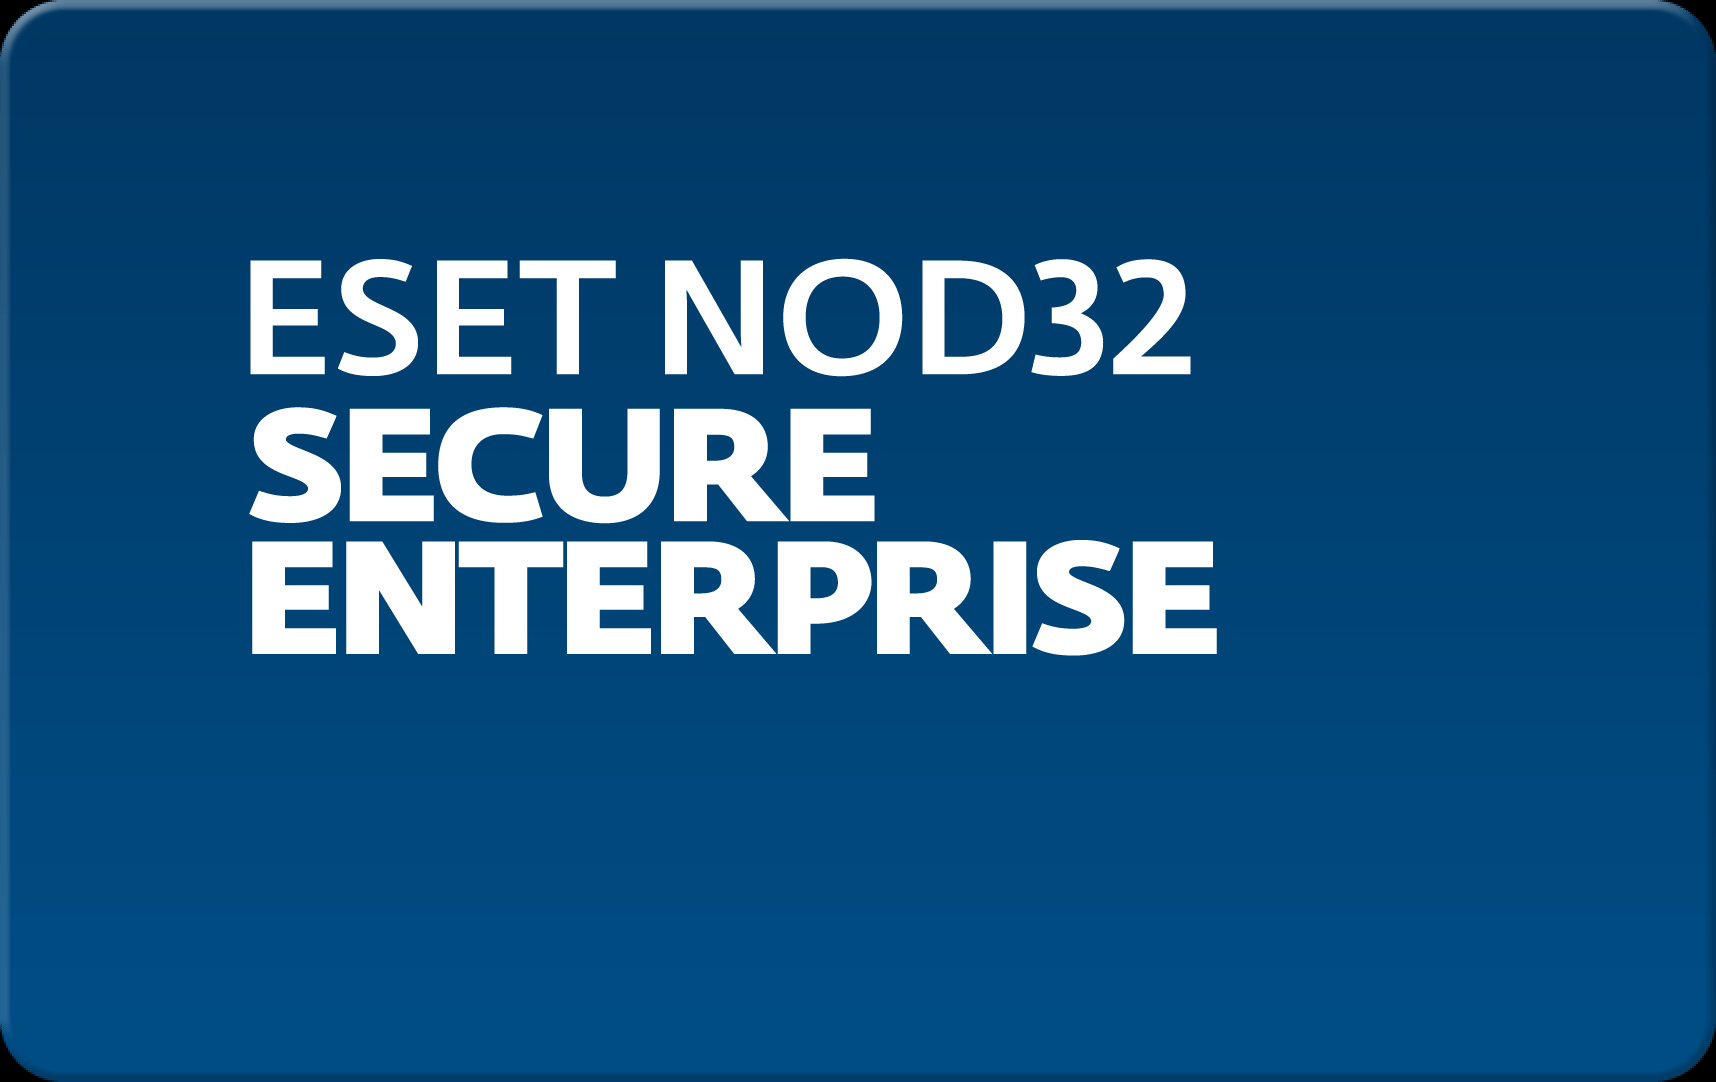        Eset NOD32 Secure Enterprise  165  NOD32-ESE-NS-1-165  #1